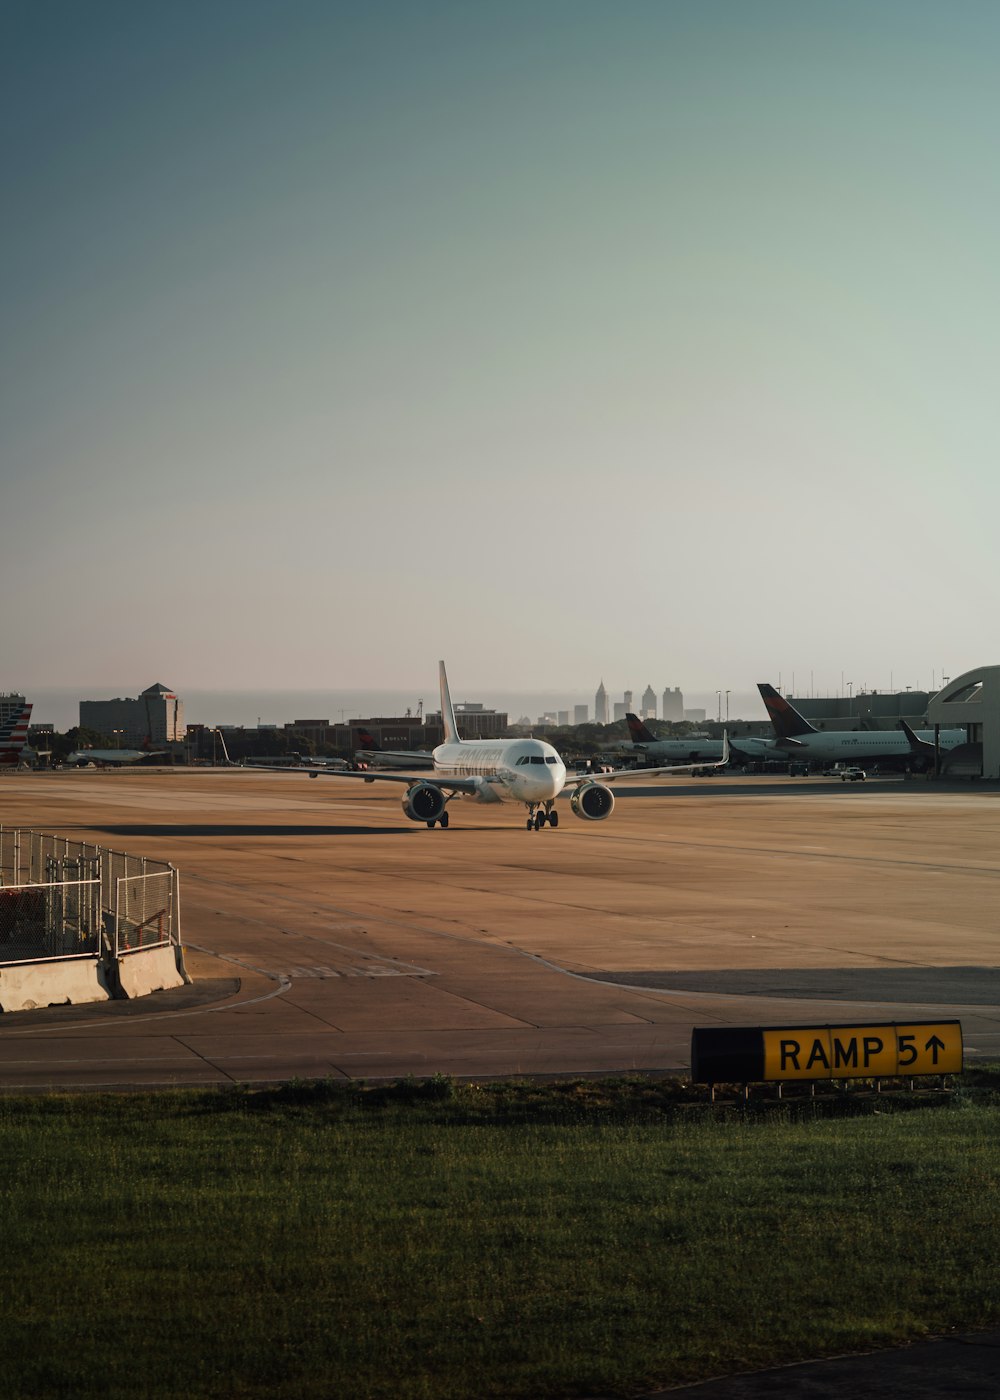 Ein großes Jetliner, das auf dem Rollfeld eines Flughafens sitzt